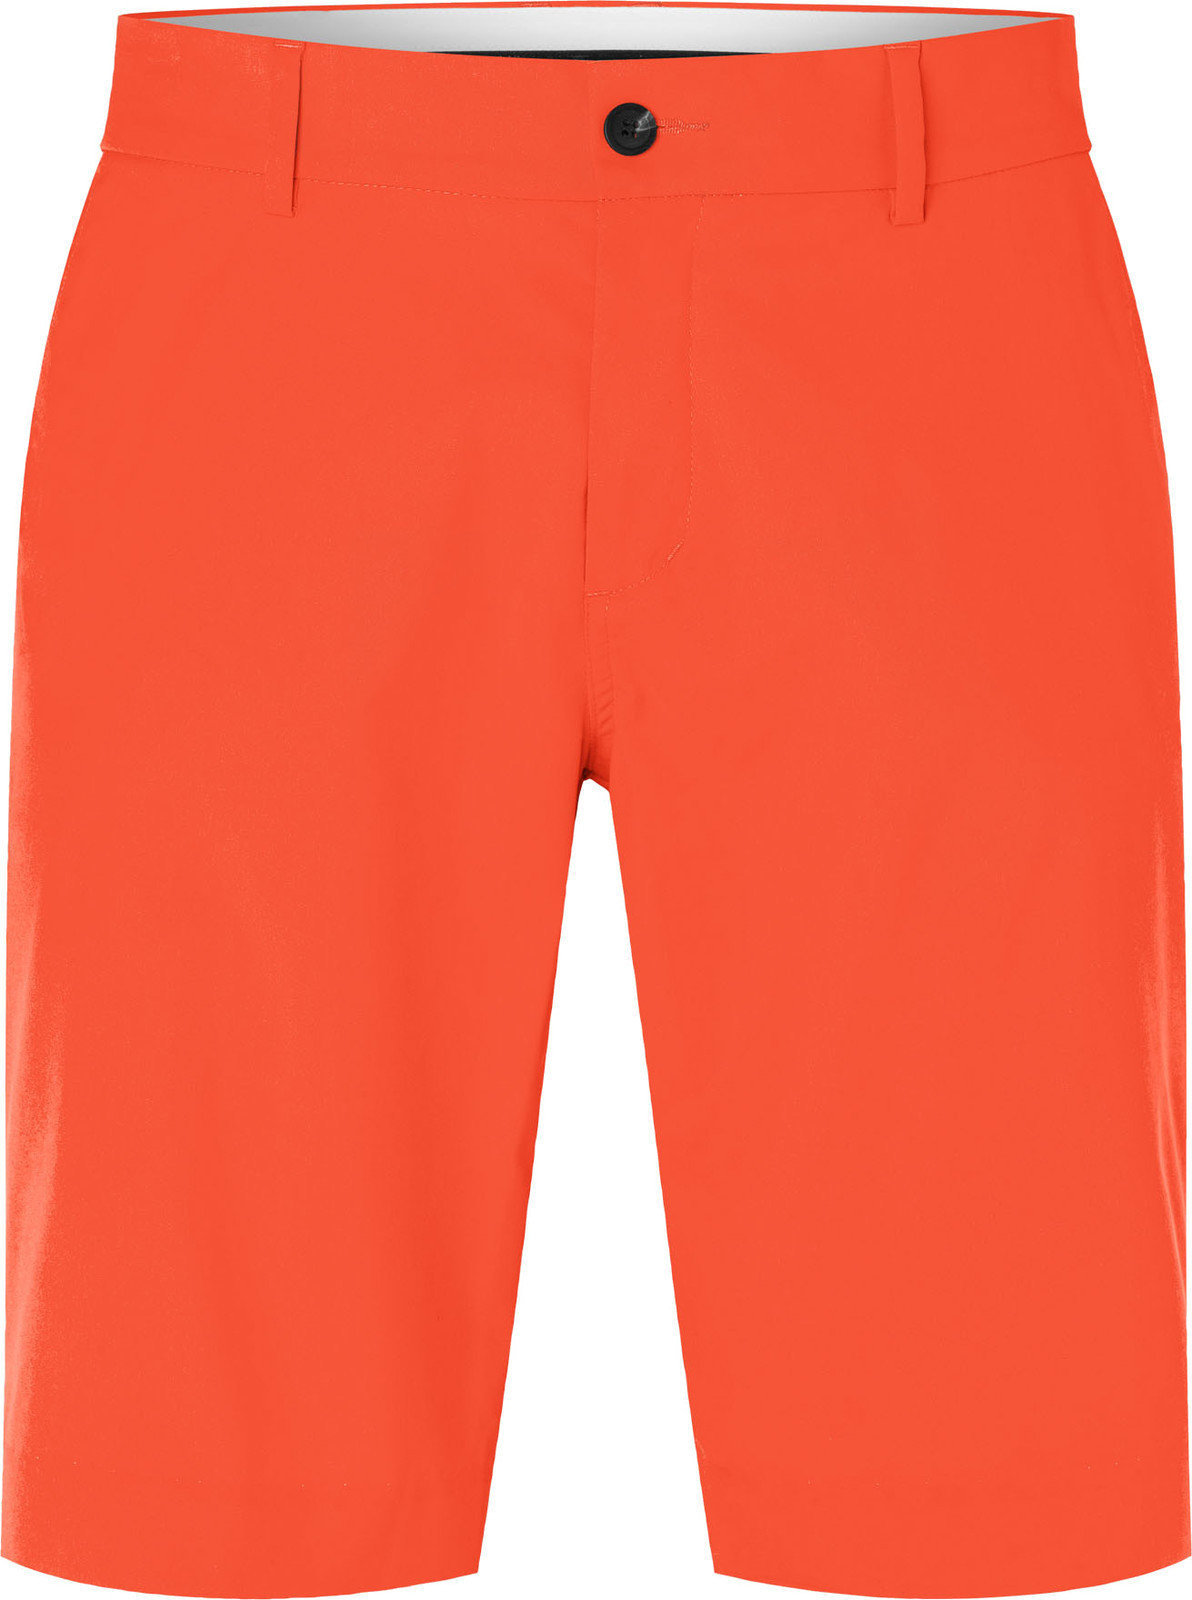 Shorts Kjus Inaction Arancione 36